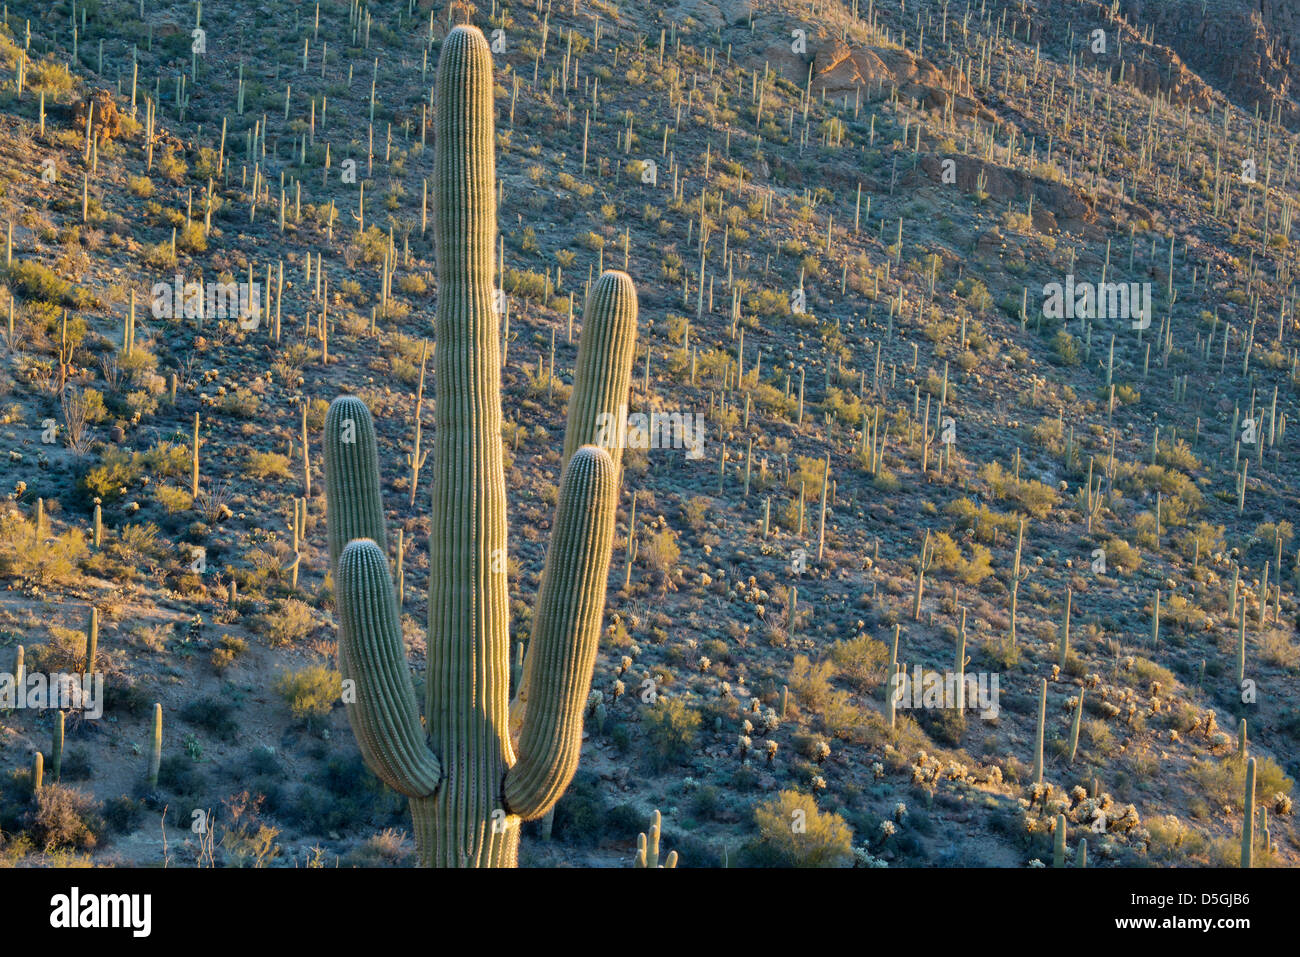 Cactus Saguaro (Carnegiea gigantea) Tucson Mountain Park, près de Tucson, Arizona, USA Banque D'Images